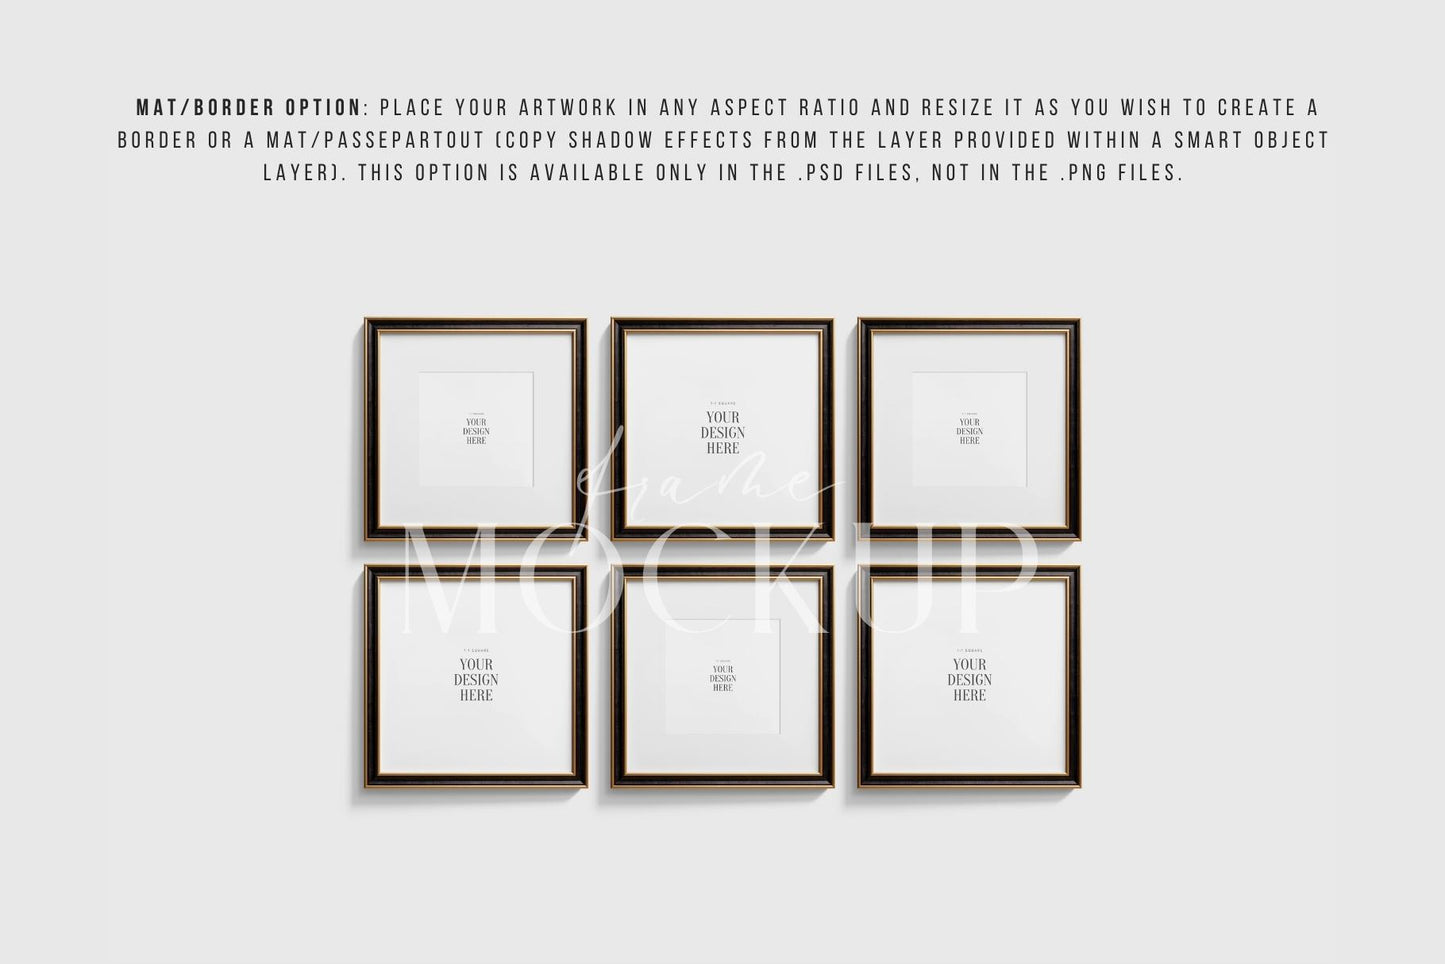 Metallic Frame Mockup Set of 6 Square Frames 1:1 | Elegant Black and Gold Frame Mockup Set | PSD Template + Transparent PNG Files